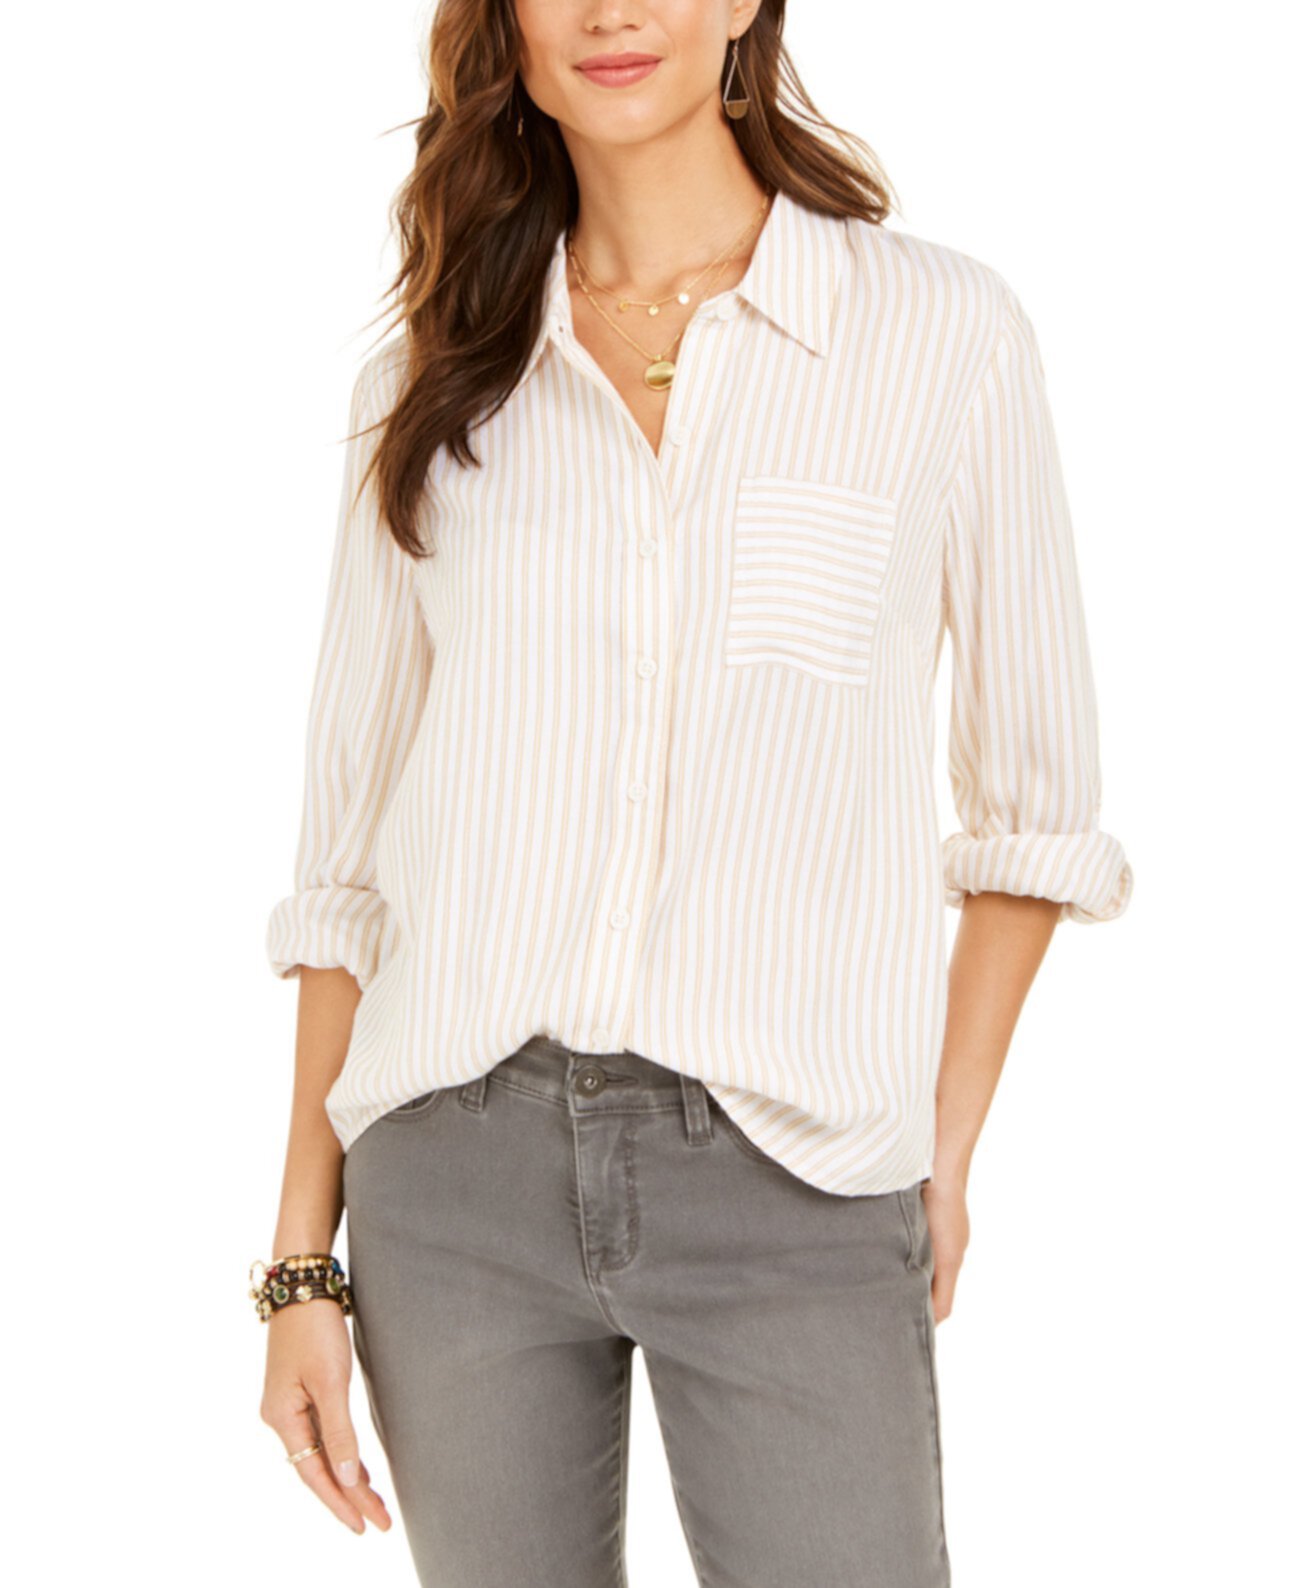 Полосатая служебная рубашка, созданная для Macy's Style & Co